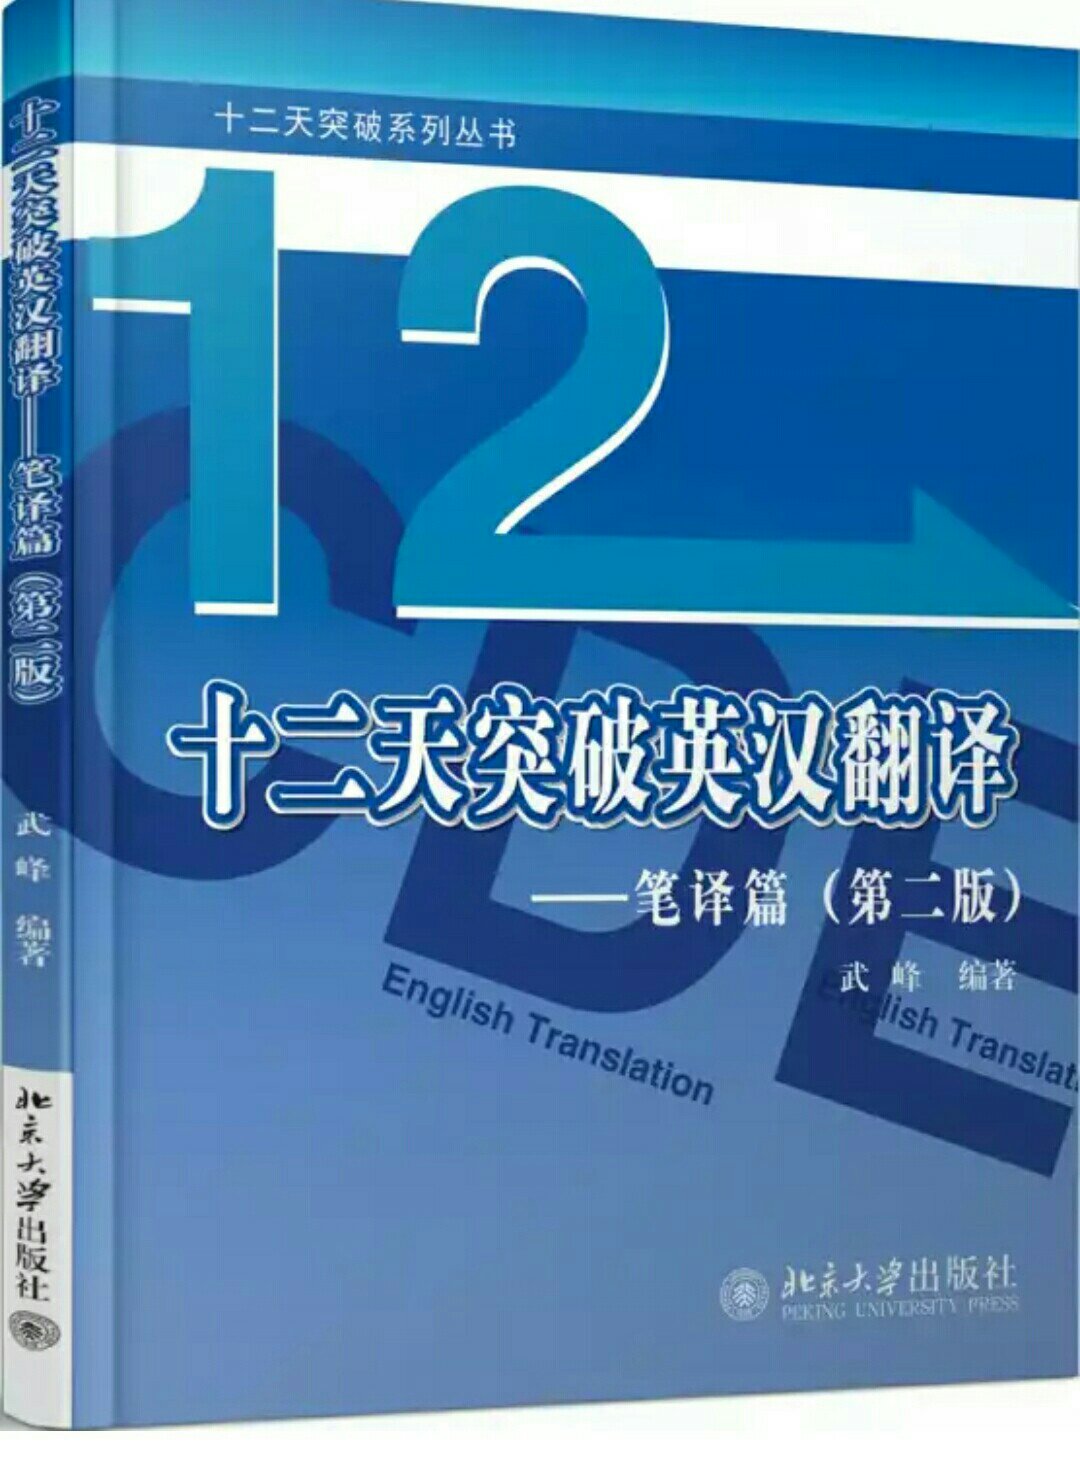 12天学笔译，内容实用，笔译必读之书。